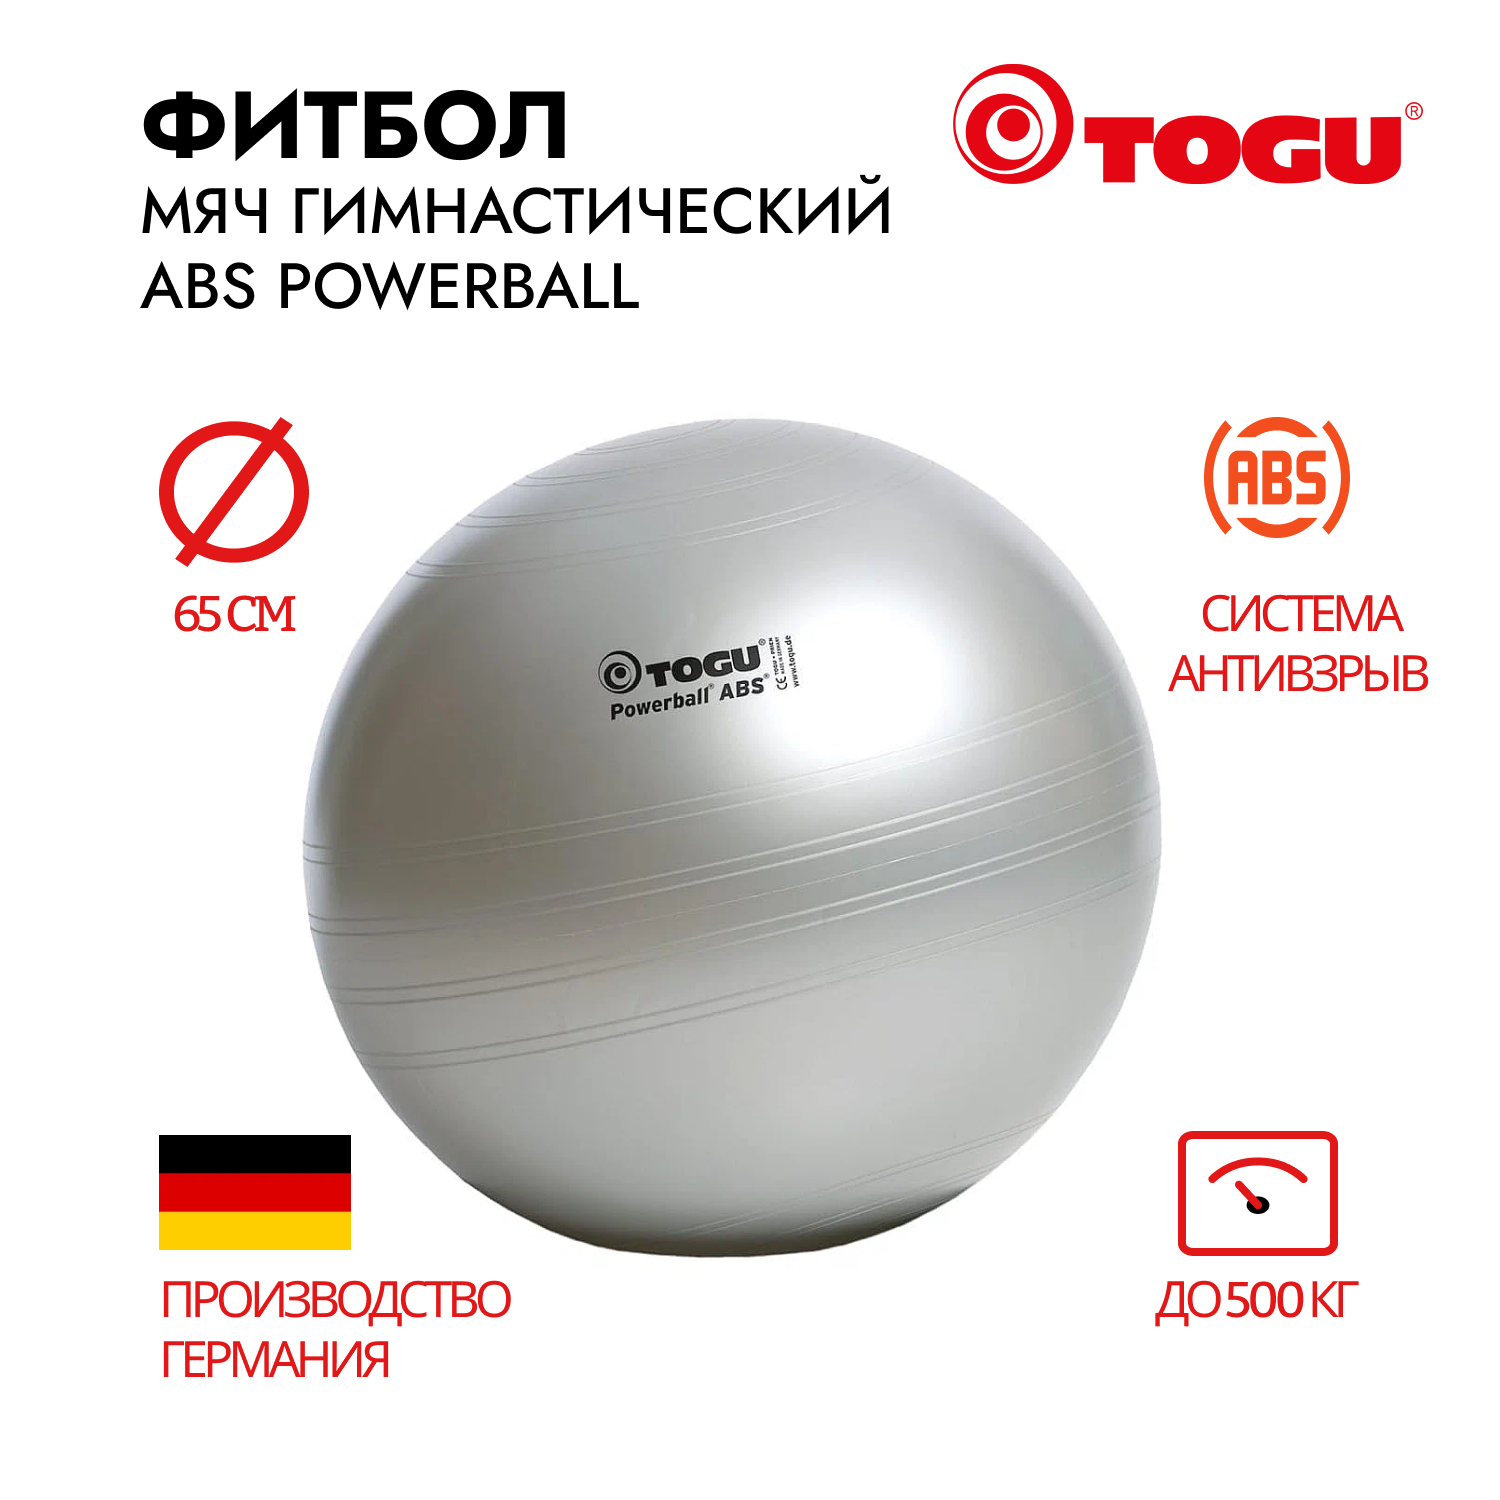 Гимнастический мяч TOGU ABS Powerball 65 см, серебряный